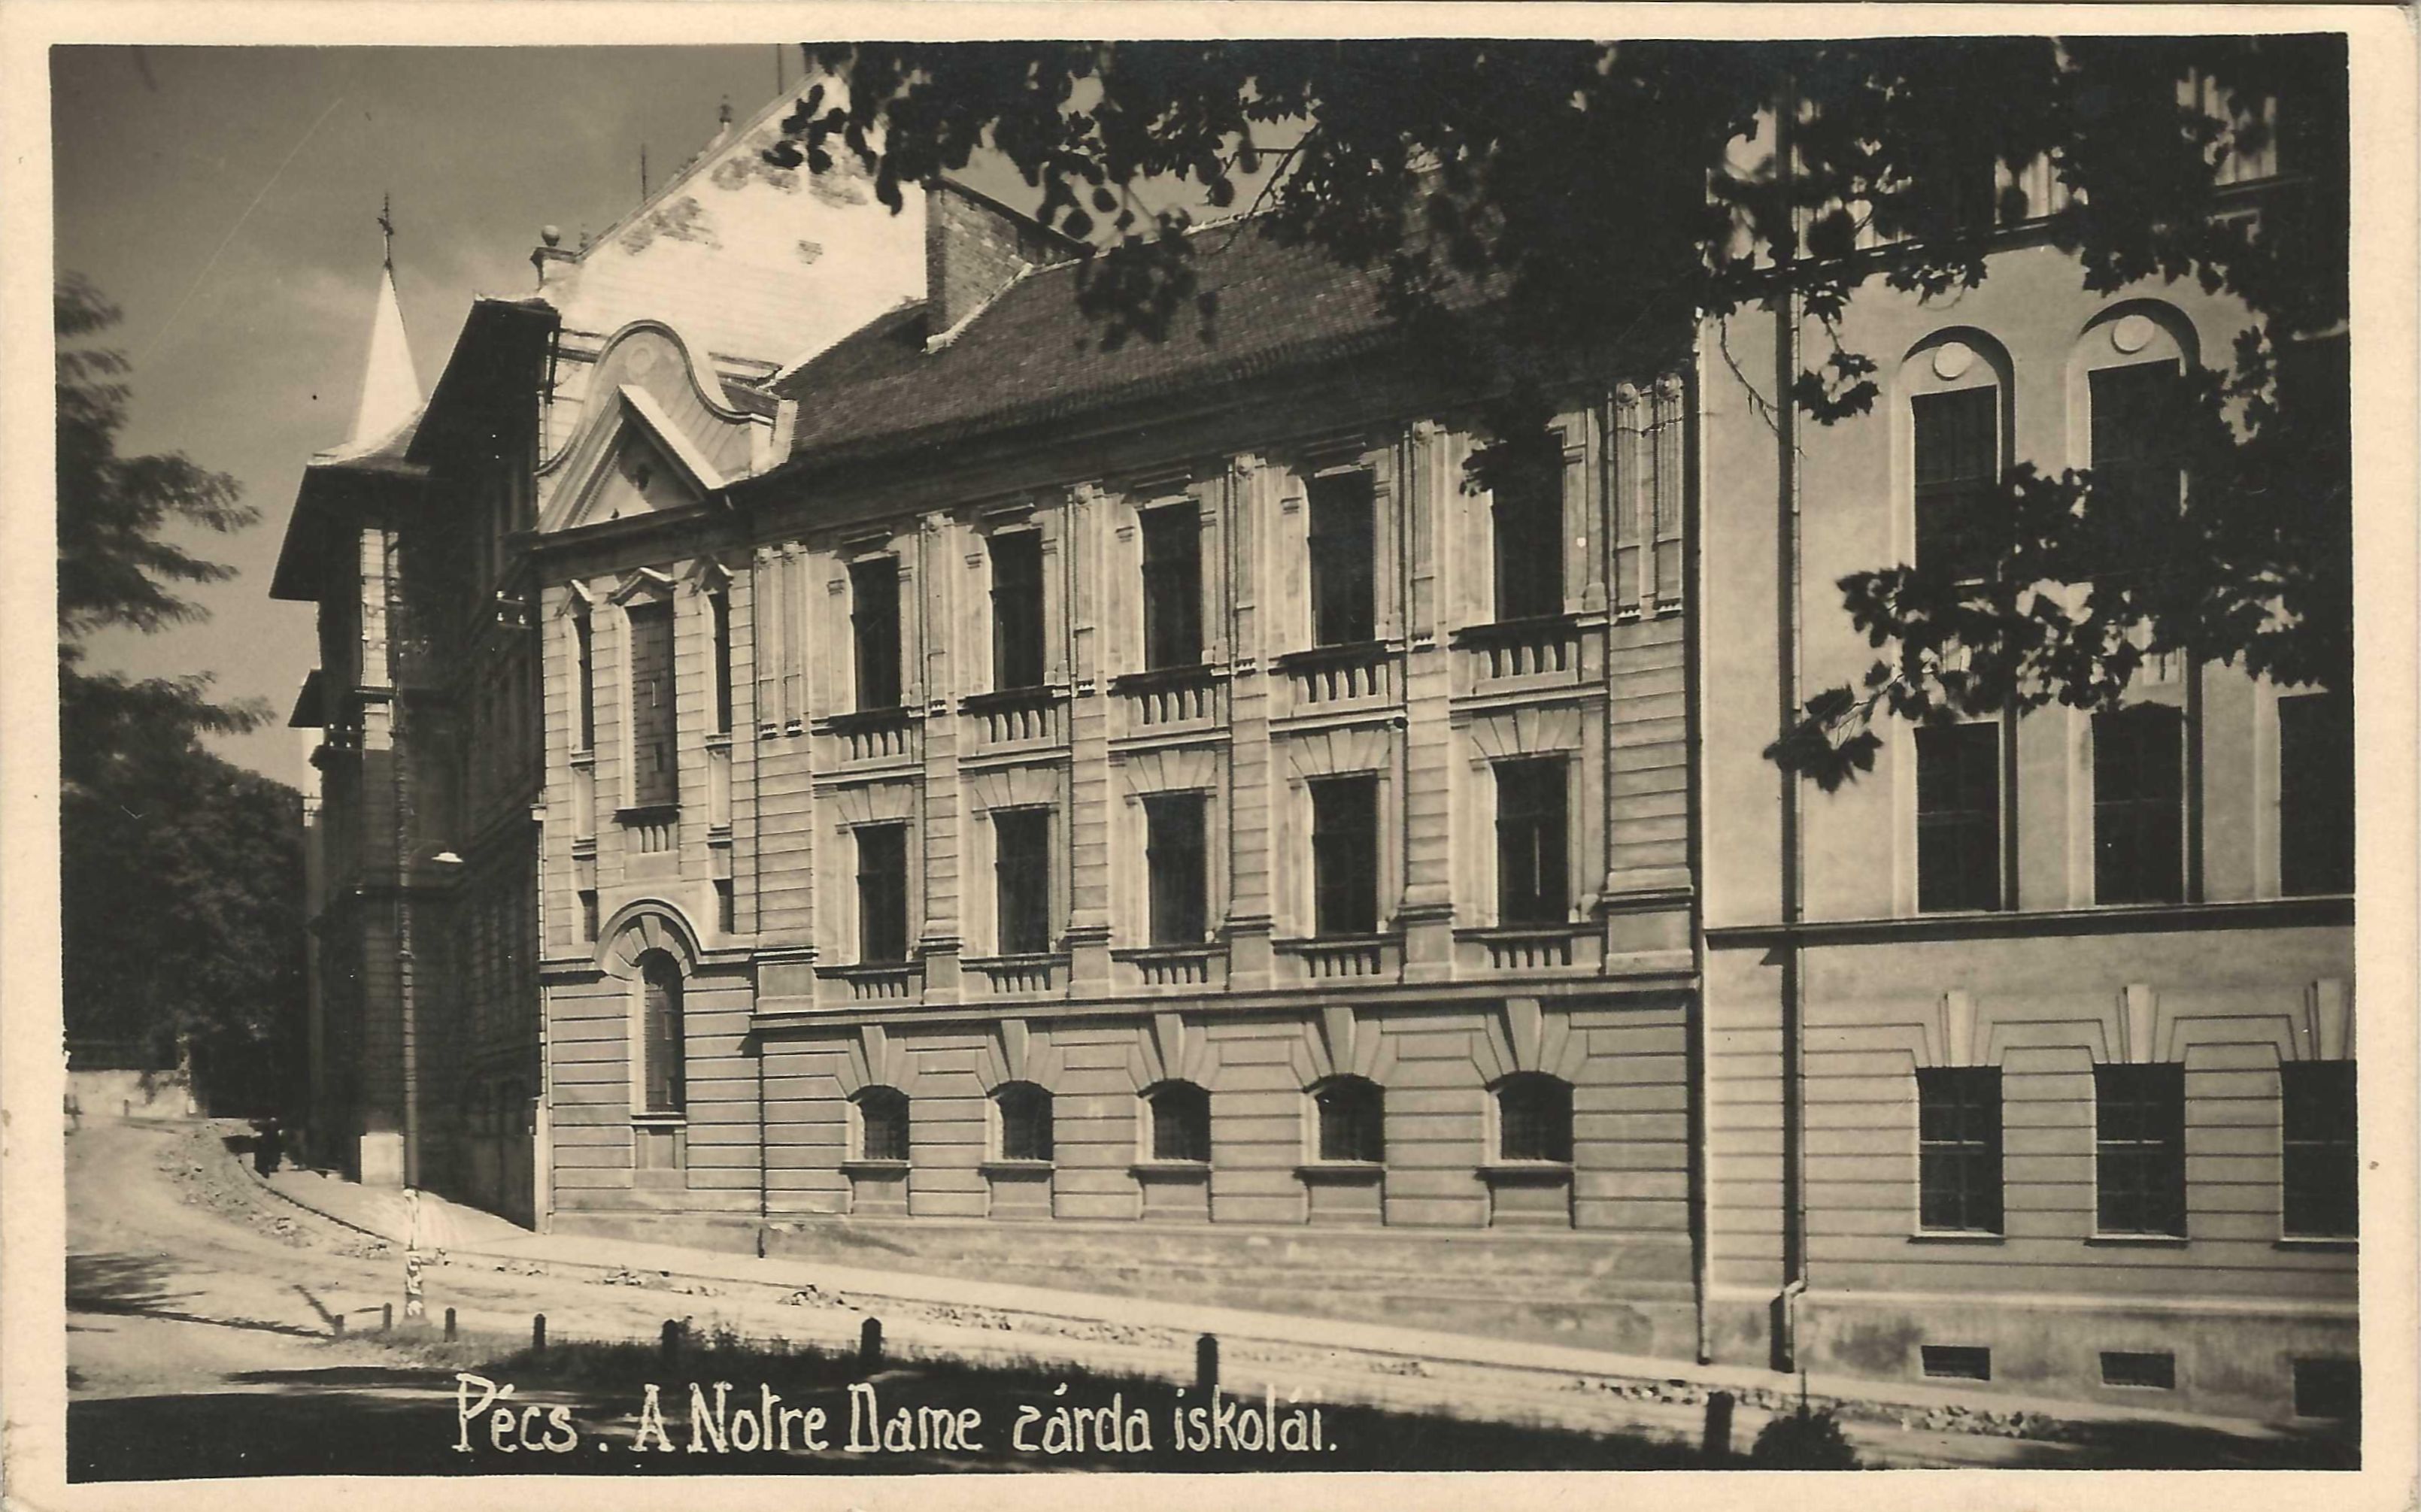 Pécs Notre Dame zárda iskolái